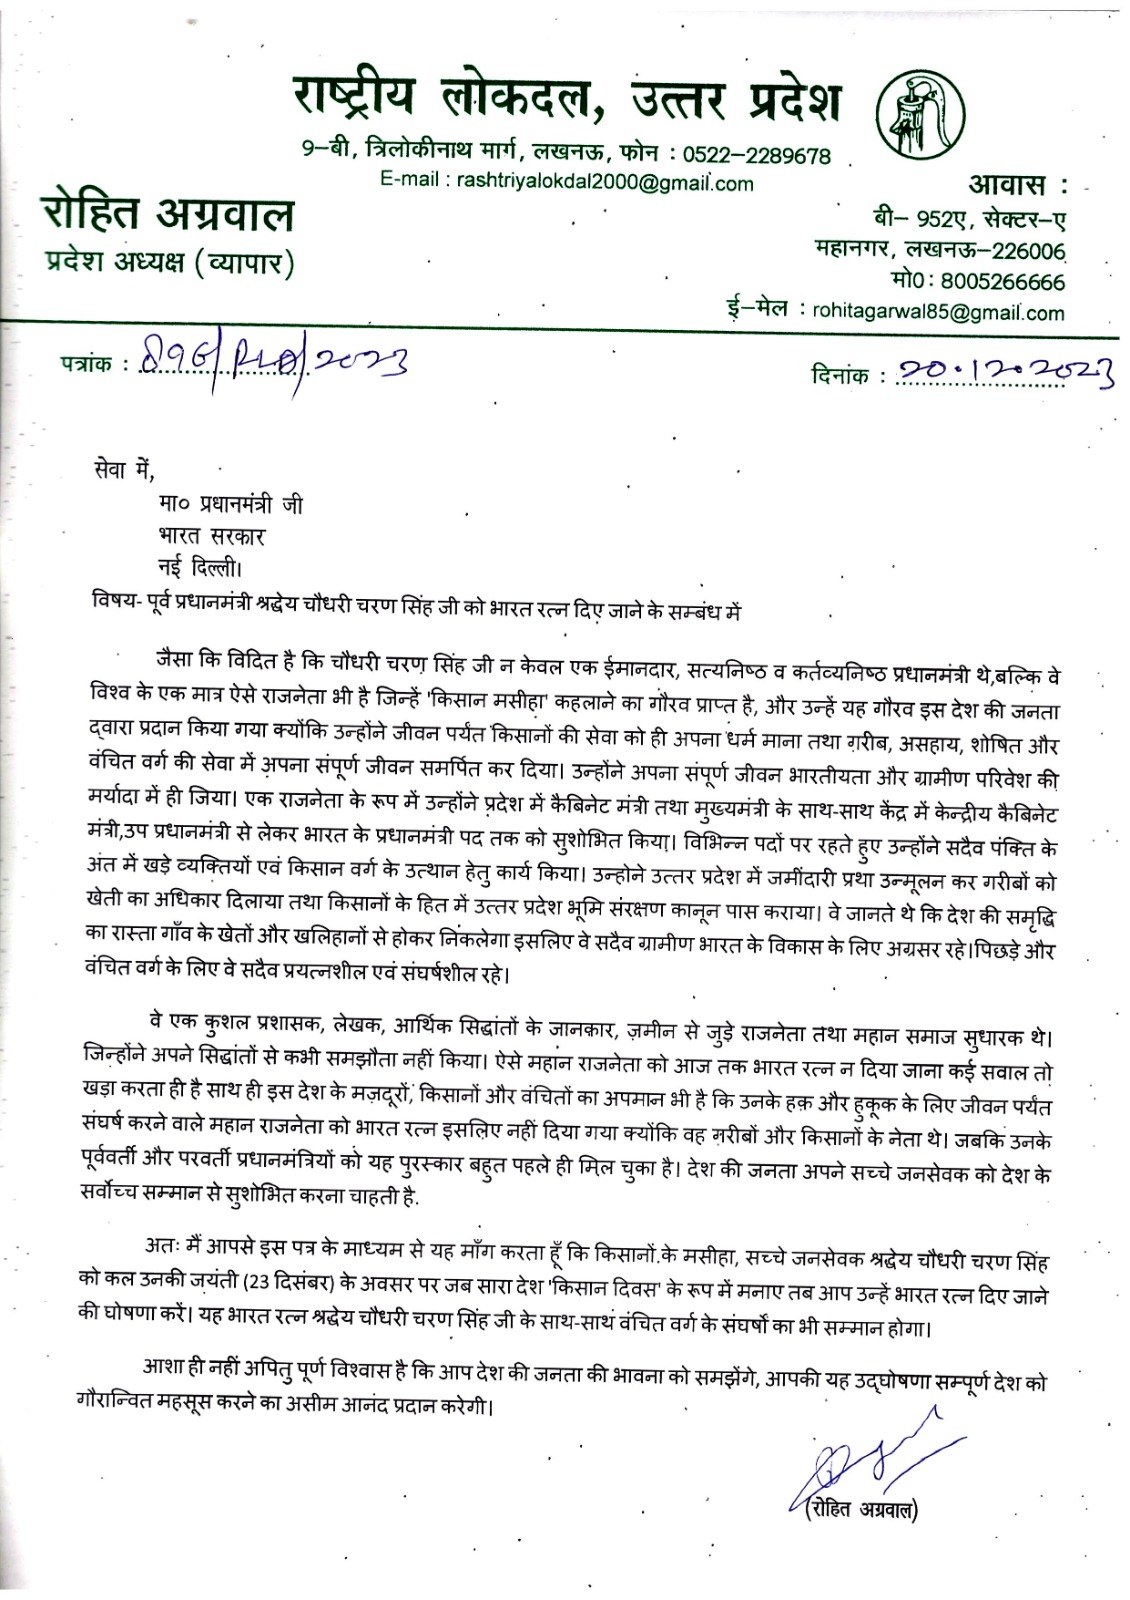 आरएलडी ने PM MODI को लिखा पत्र